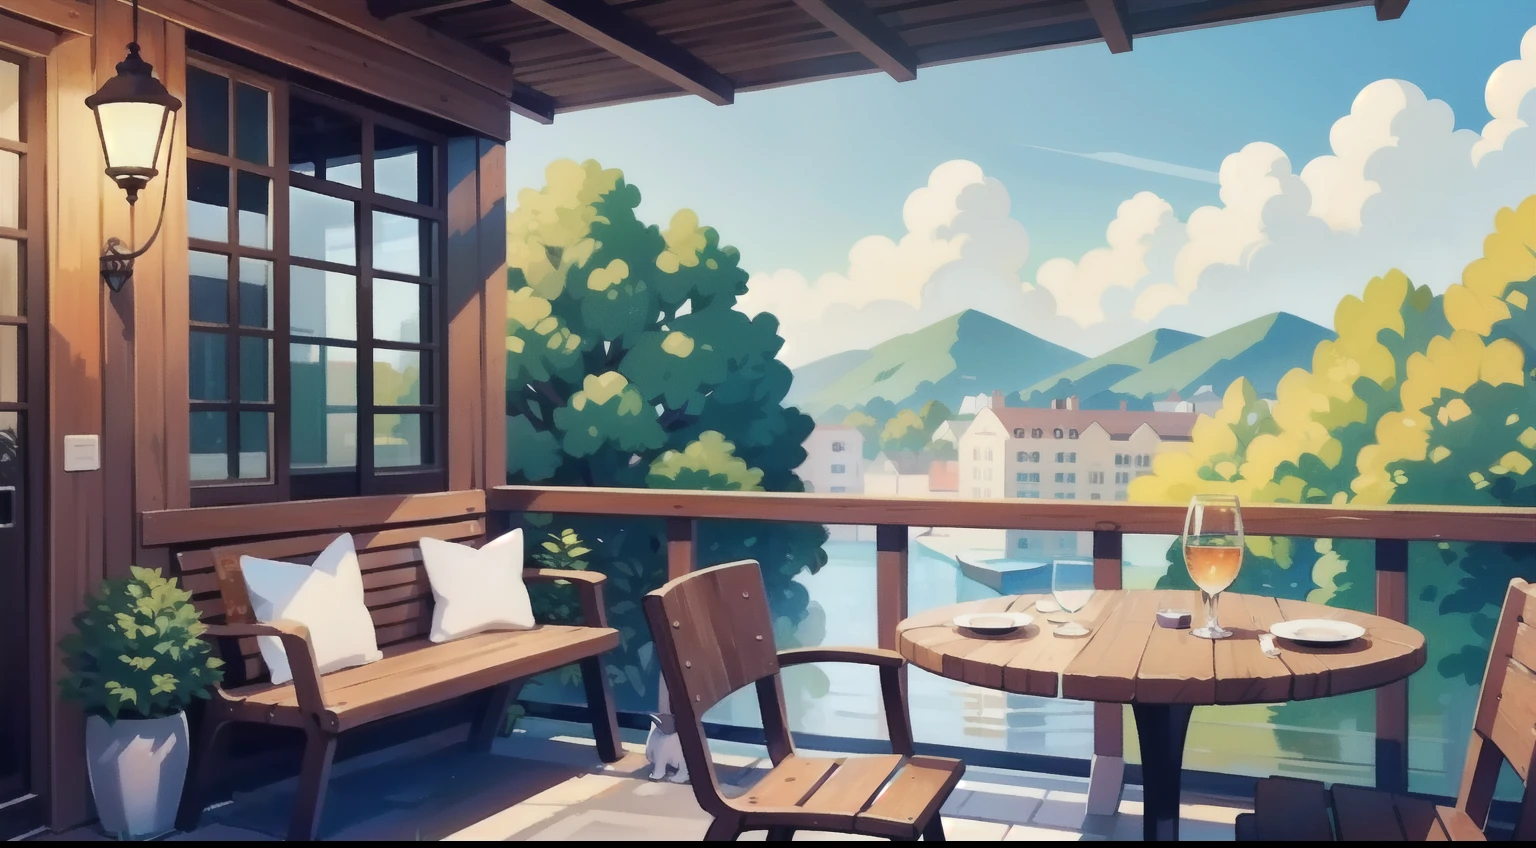 Hermosa pintura de paisaje、Asientos en la terraza del café、cielo azul、ultra calidad、Mesa、Natural Color、Perro marrón en una silla、Perro negro